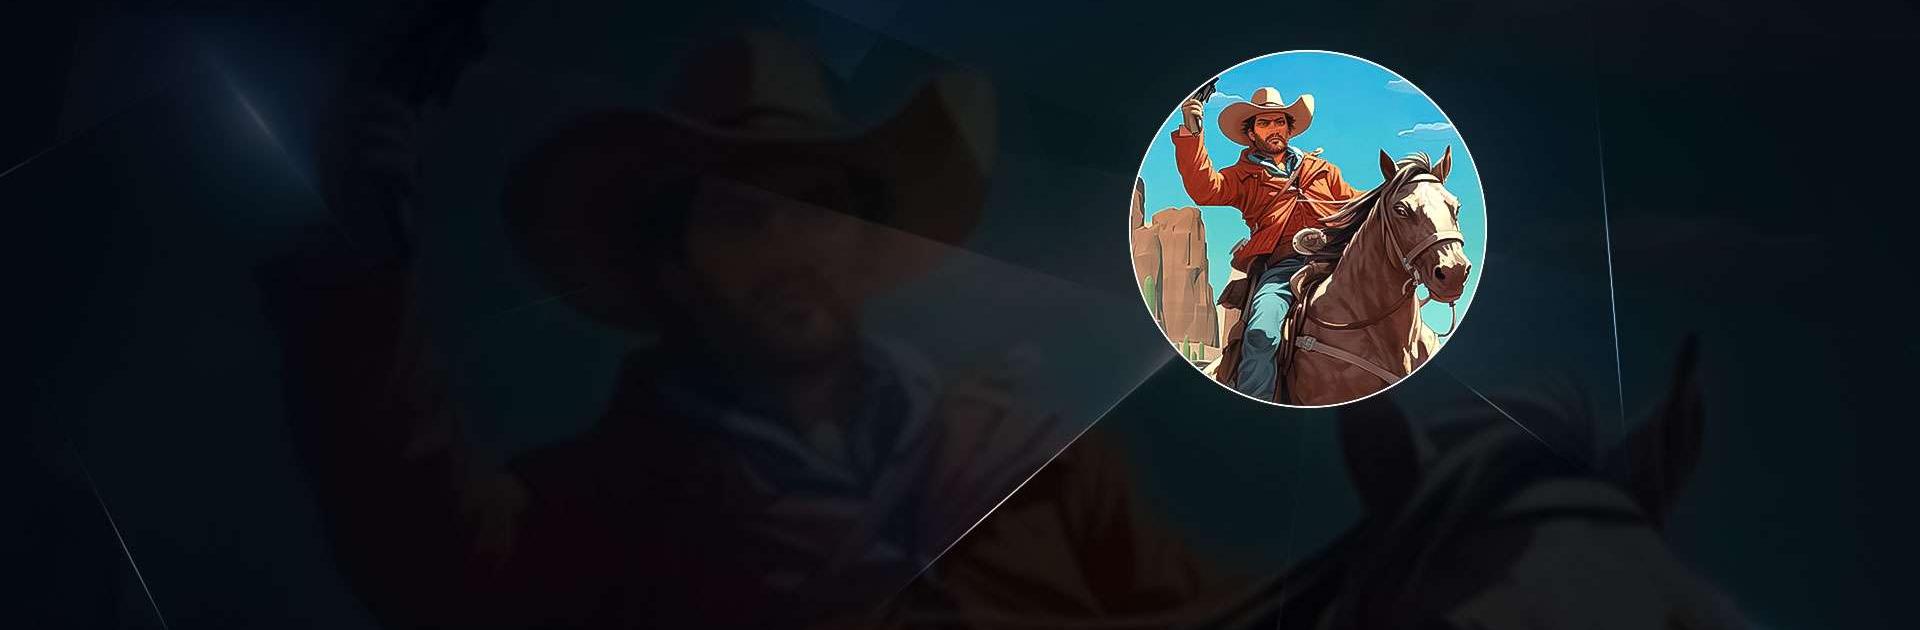 Play Wild West Cowboy Redemption Online